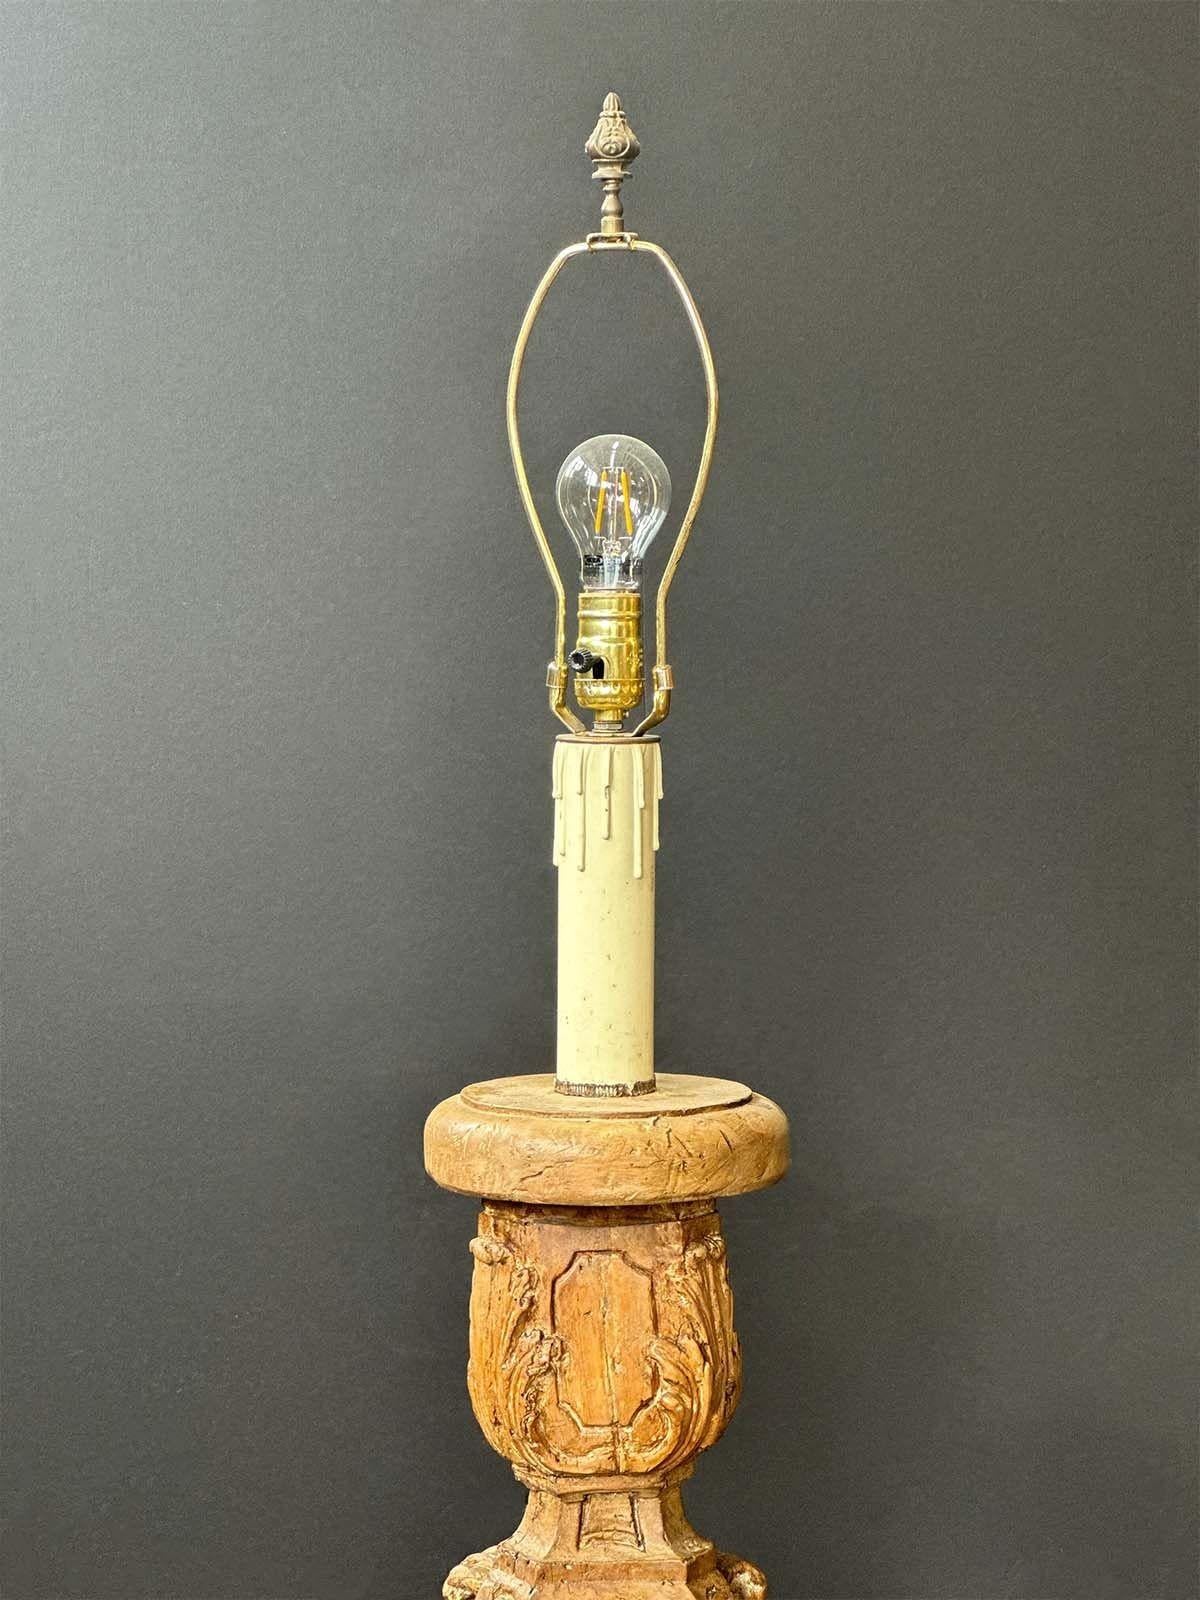 Superbe lampadaire italien du XVIIIe siècle, sculpté à la main. Homologué UL (recâblé pour répondre aux normes américaines). 
Dimensions :
76,5 